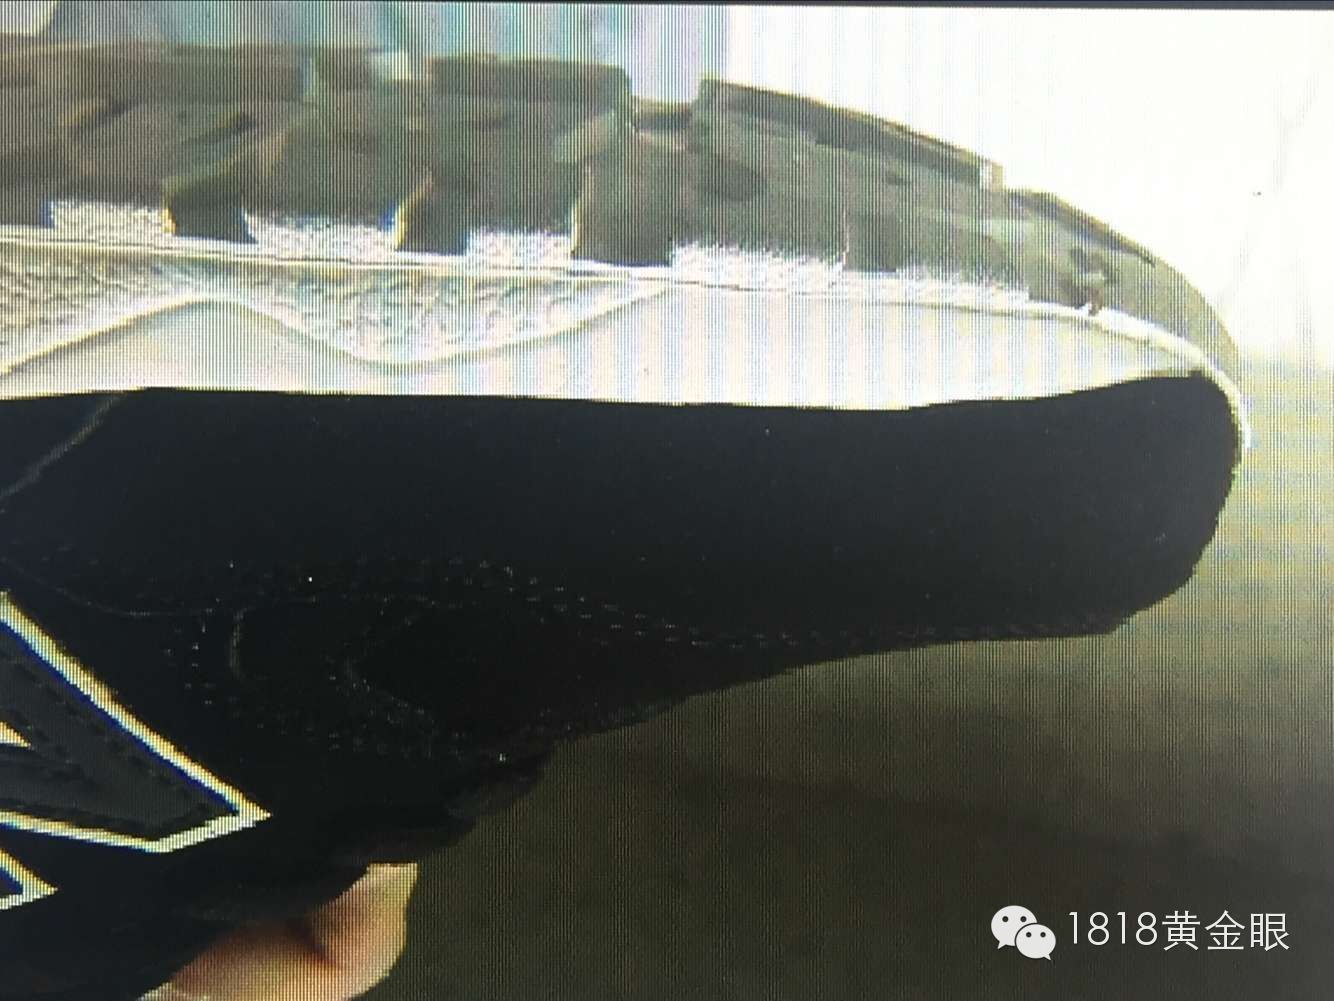 京东买的新百伦跑鞋怀疑是假货 店家:对方用小